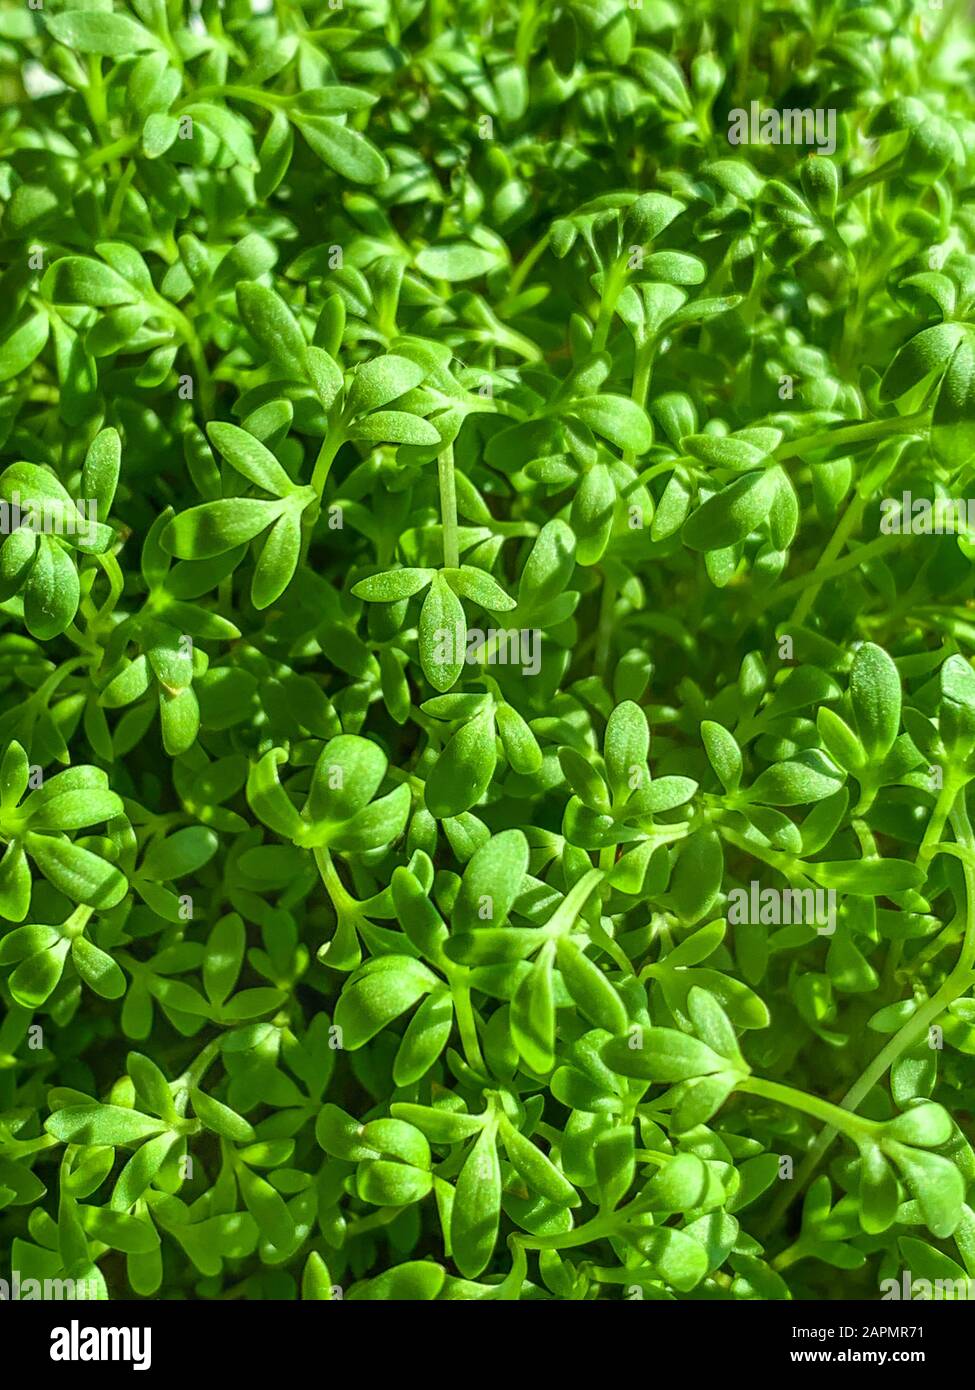 Gartenkresse sprießt von oben. Kress, auch Pfefferwort oder Pfeffergras. Lepidium sativum, ein schnell wachsendes essbares Kraut. Grüne Sämlinge. Stockfoto